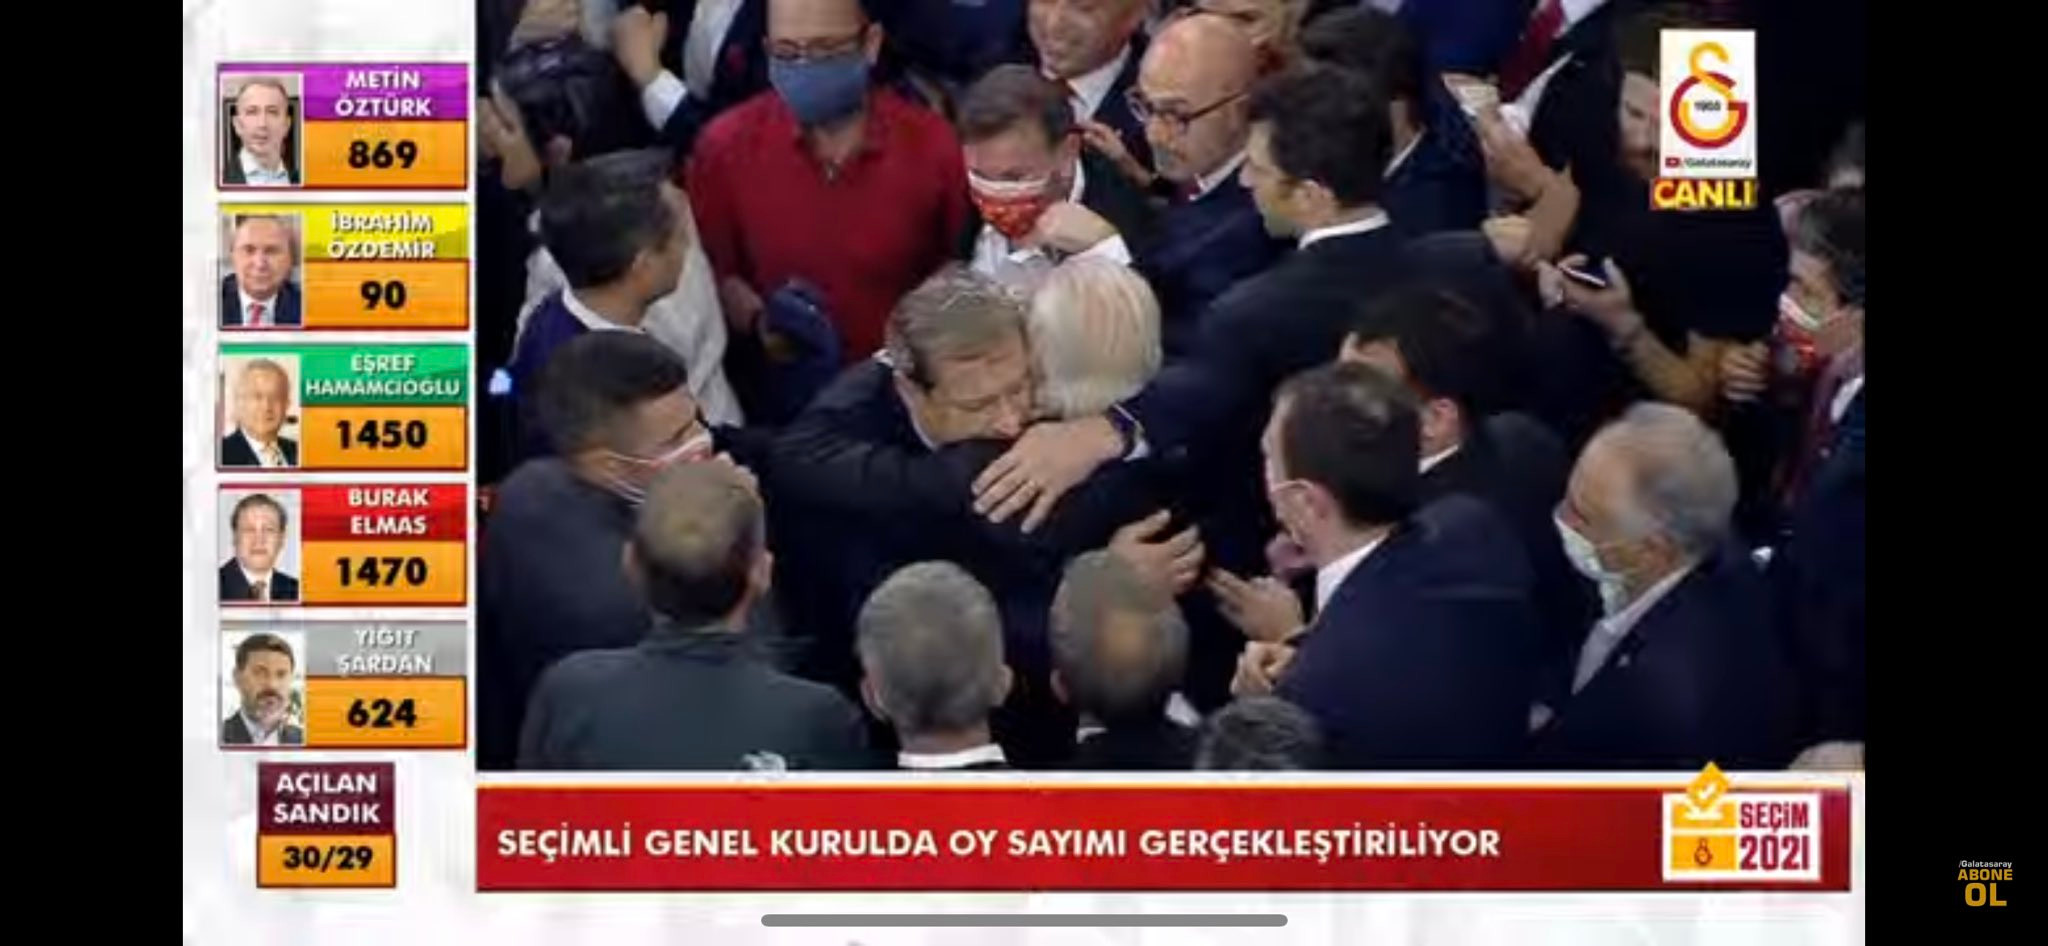 İşte Galatasaray'ın yeni başkanı: Burak Elmas ve Eşref Hamamcıoğlu arasındaki yarış sona erdi - Resim : 1